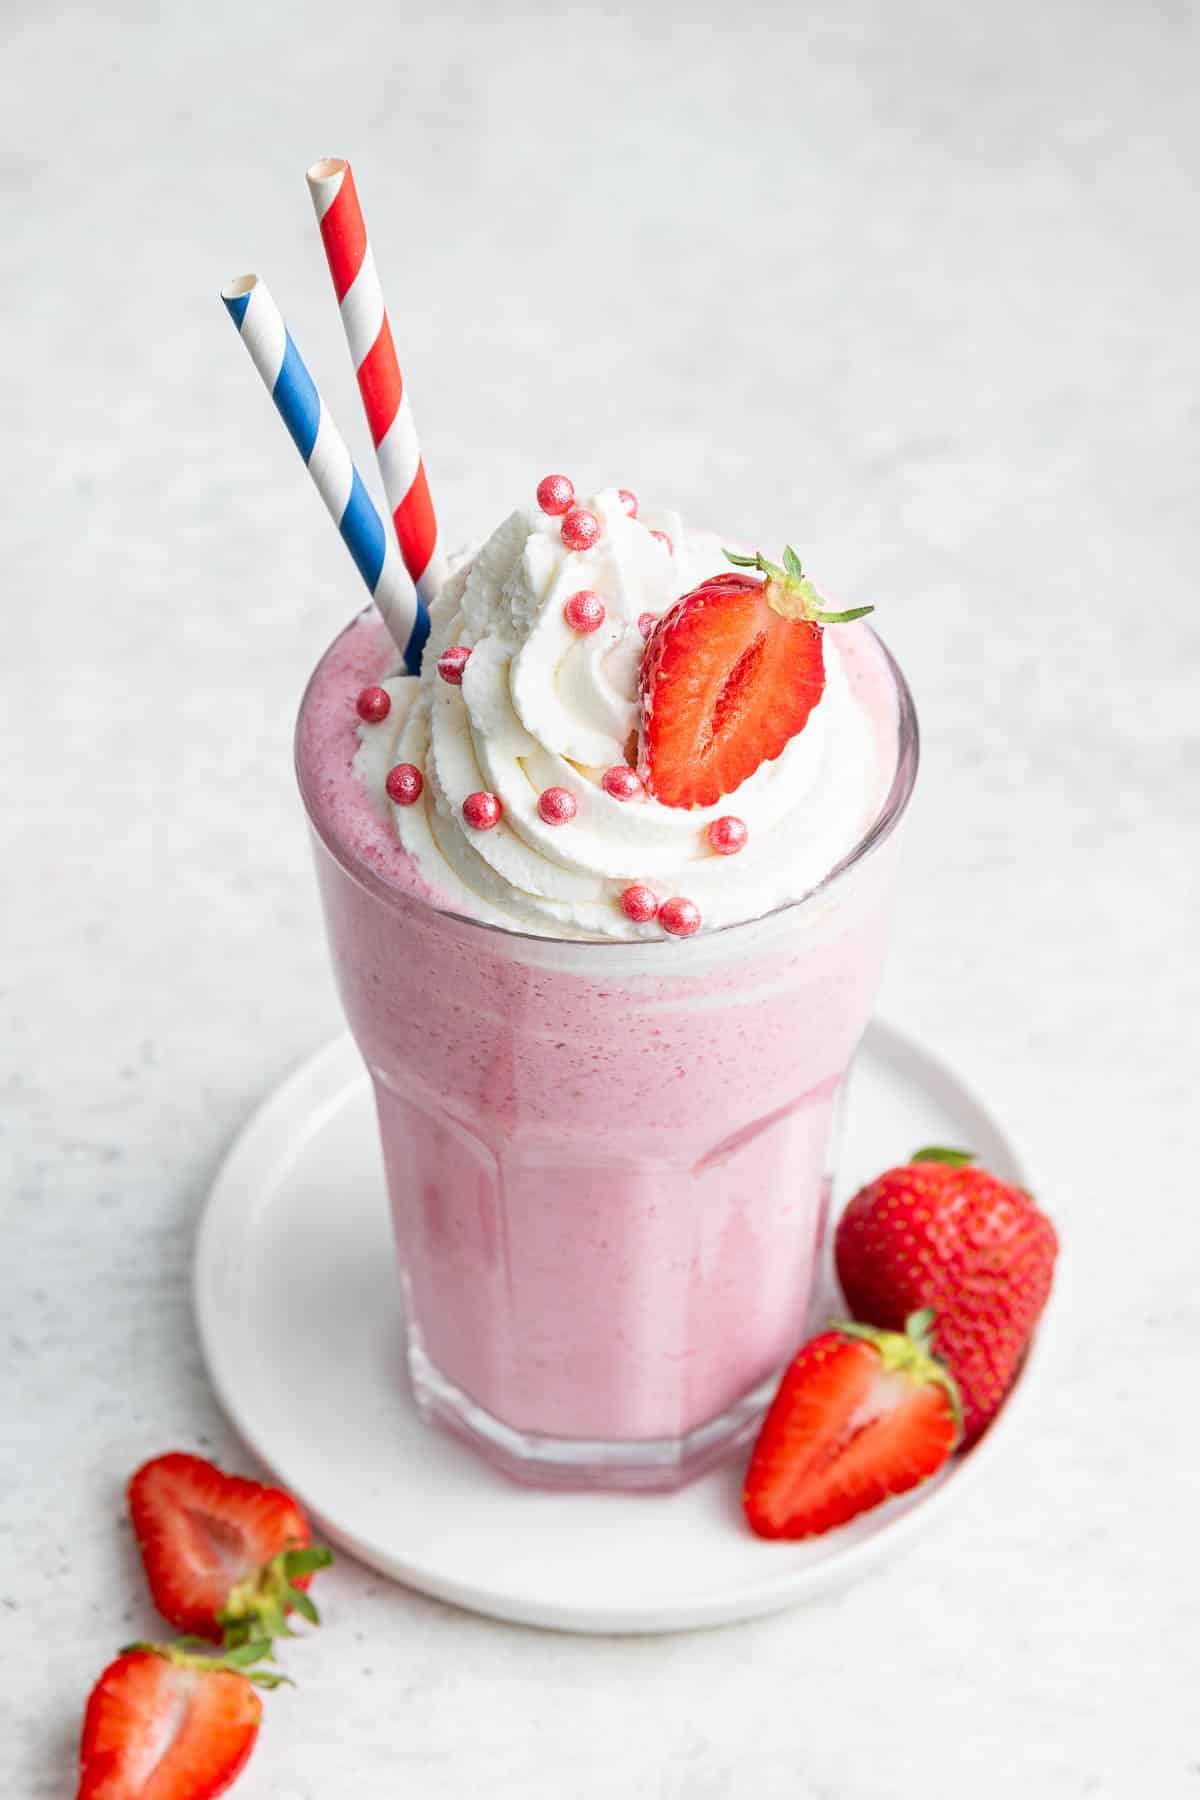 Bestes Milchshake-Rezept für Erdbeeren im Glas, garniert mit 2 Strohhalmen.